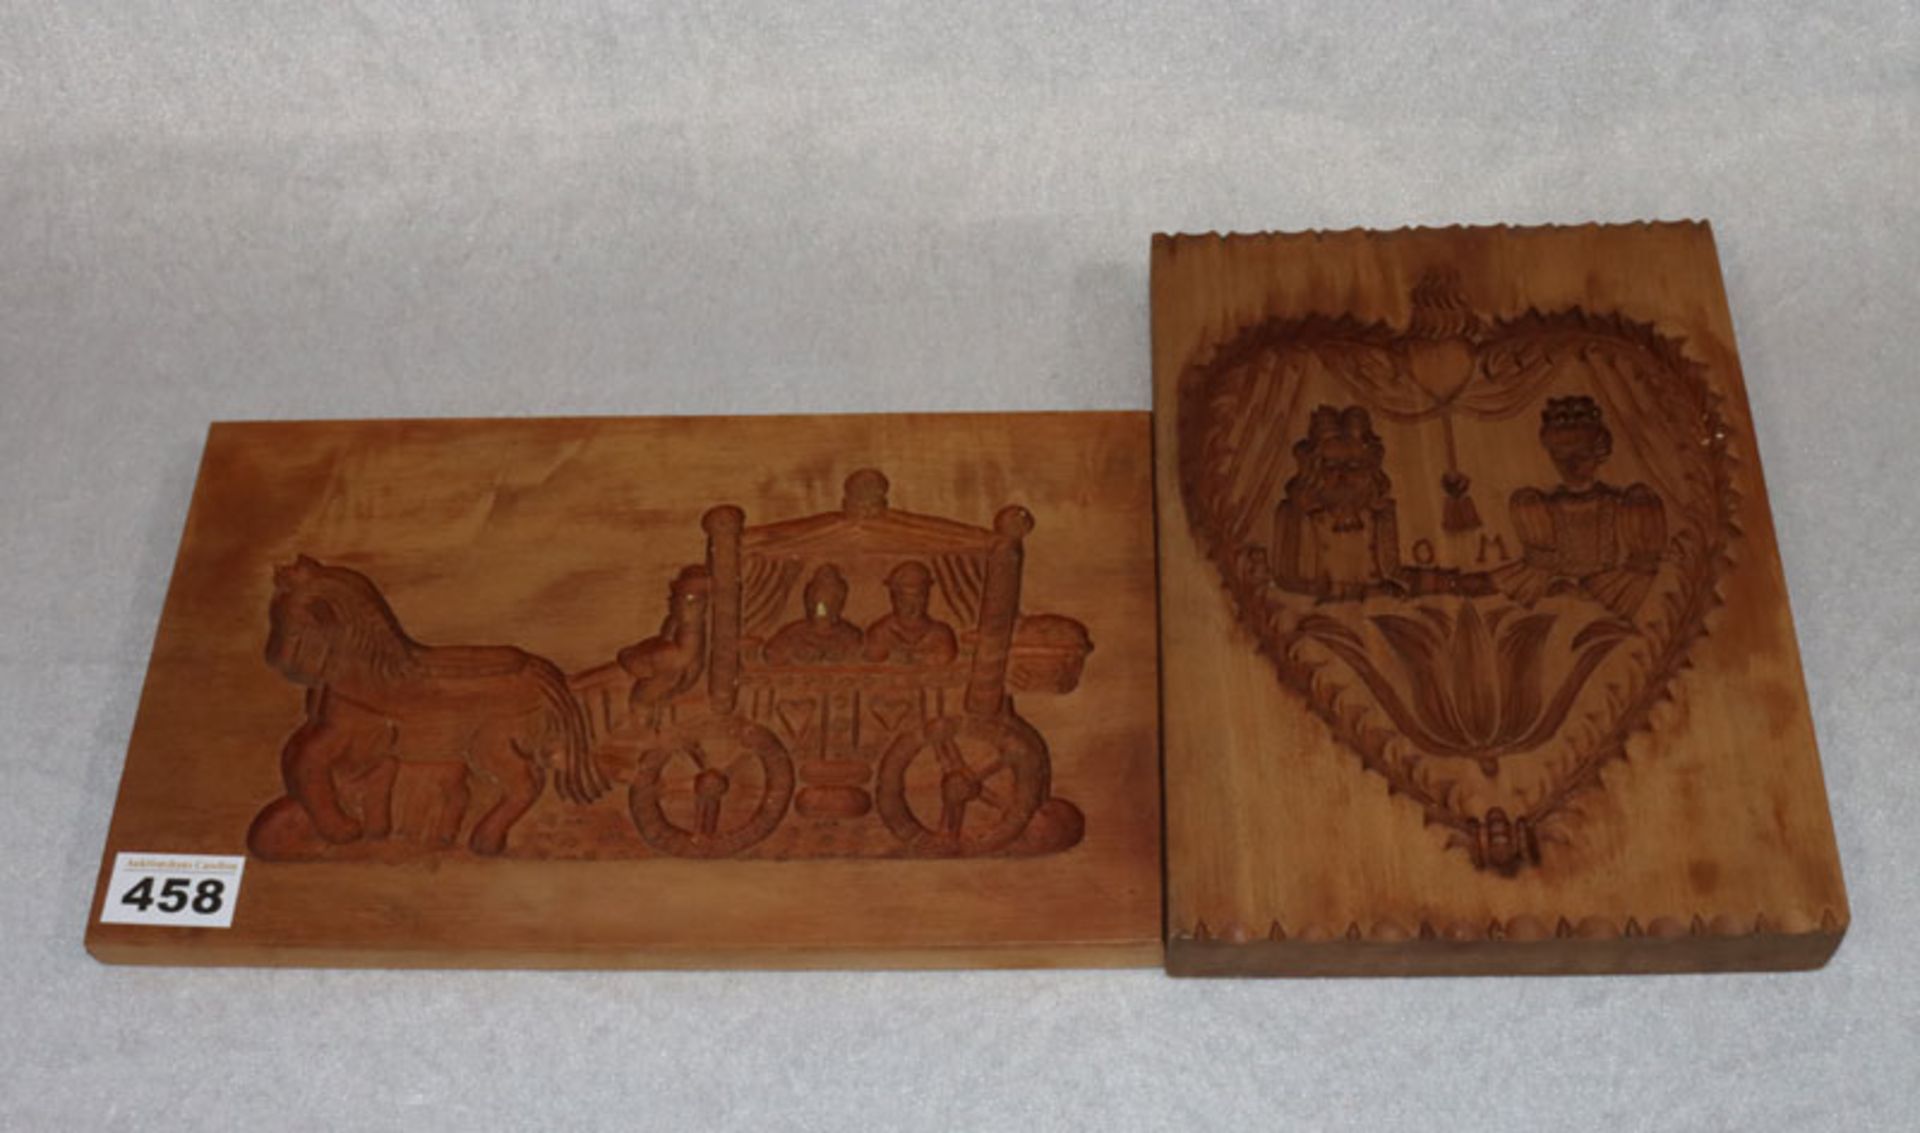 2 Holz Reliefbilder, Kutsche und Herz, 18 cm x 30 cm und 24 cm x 17,5 cm, Altersspuren